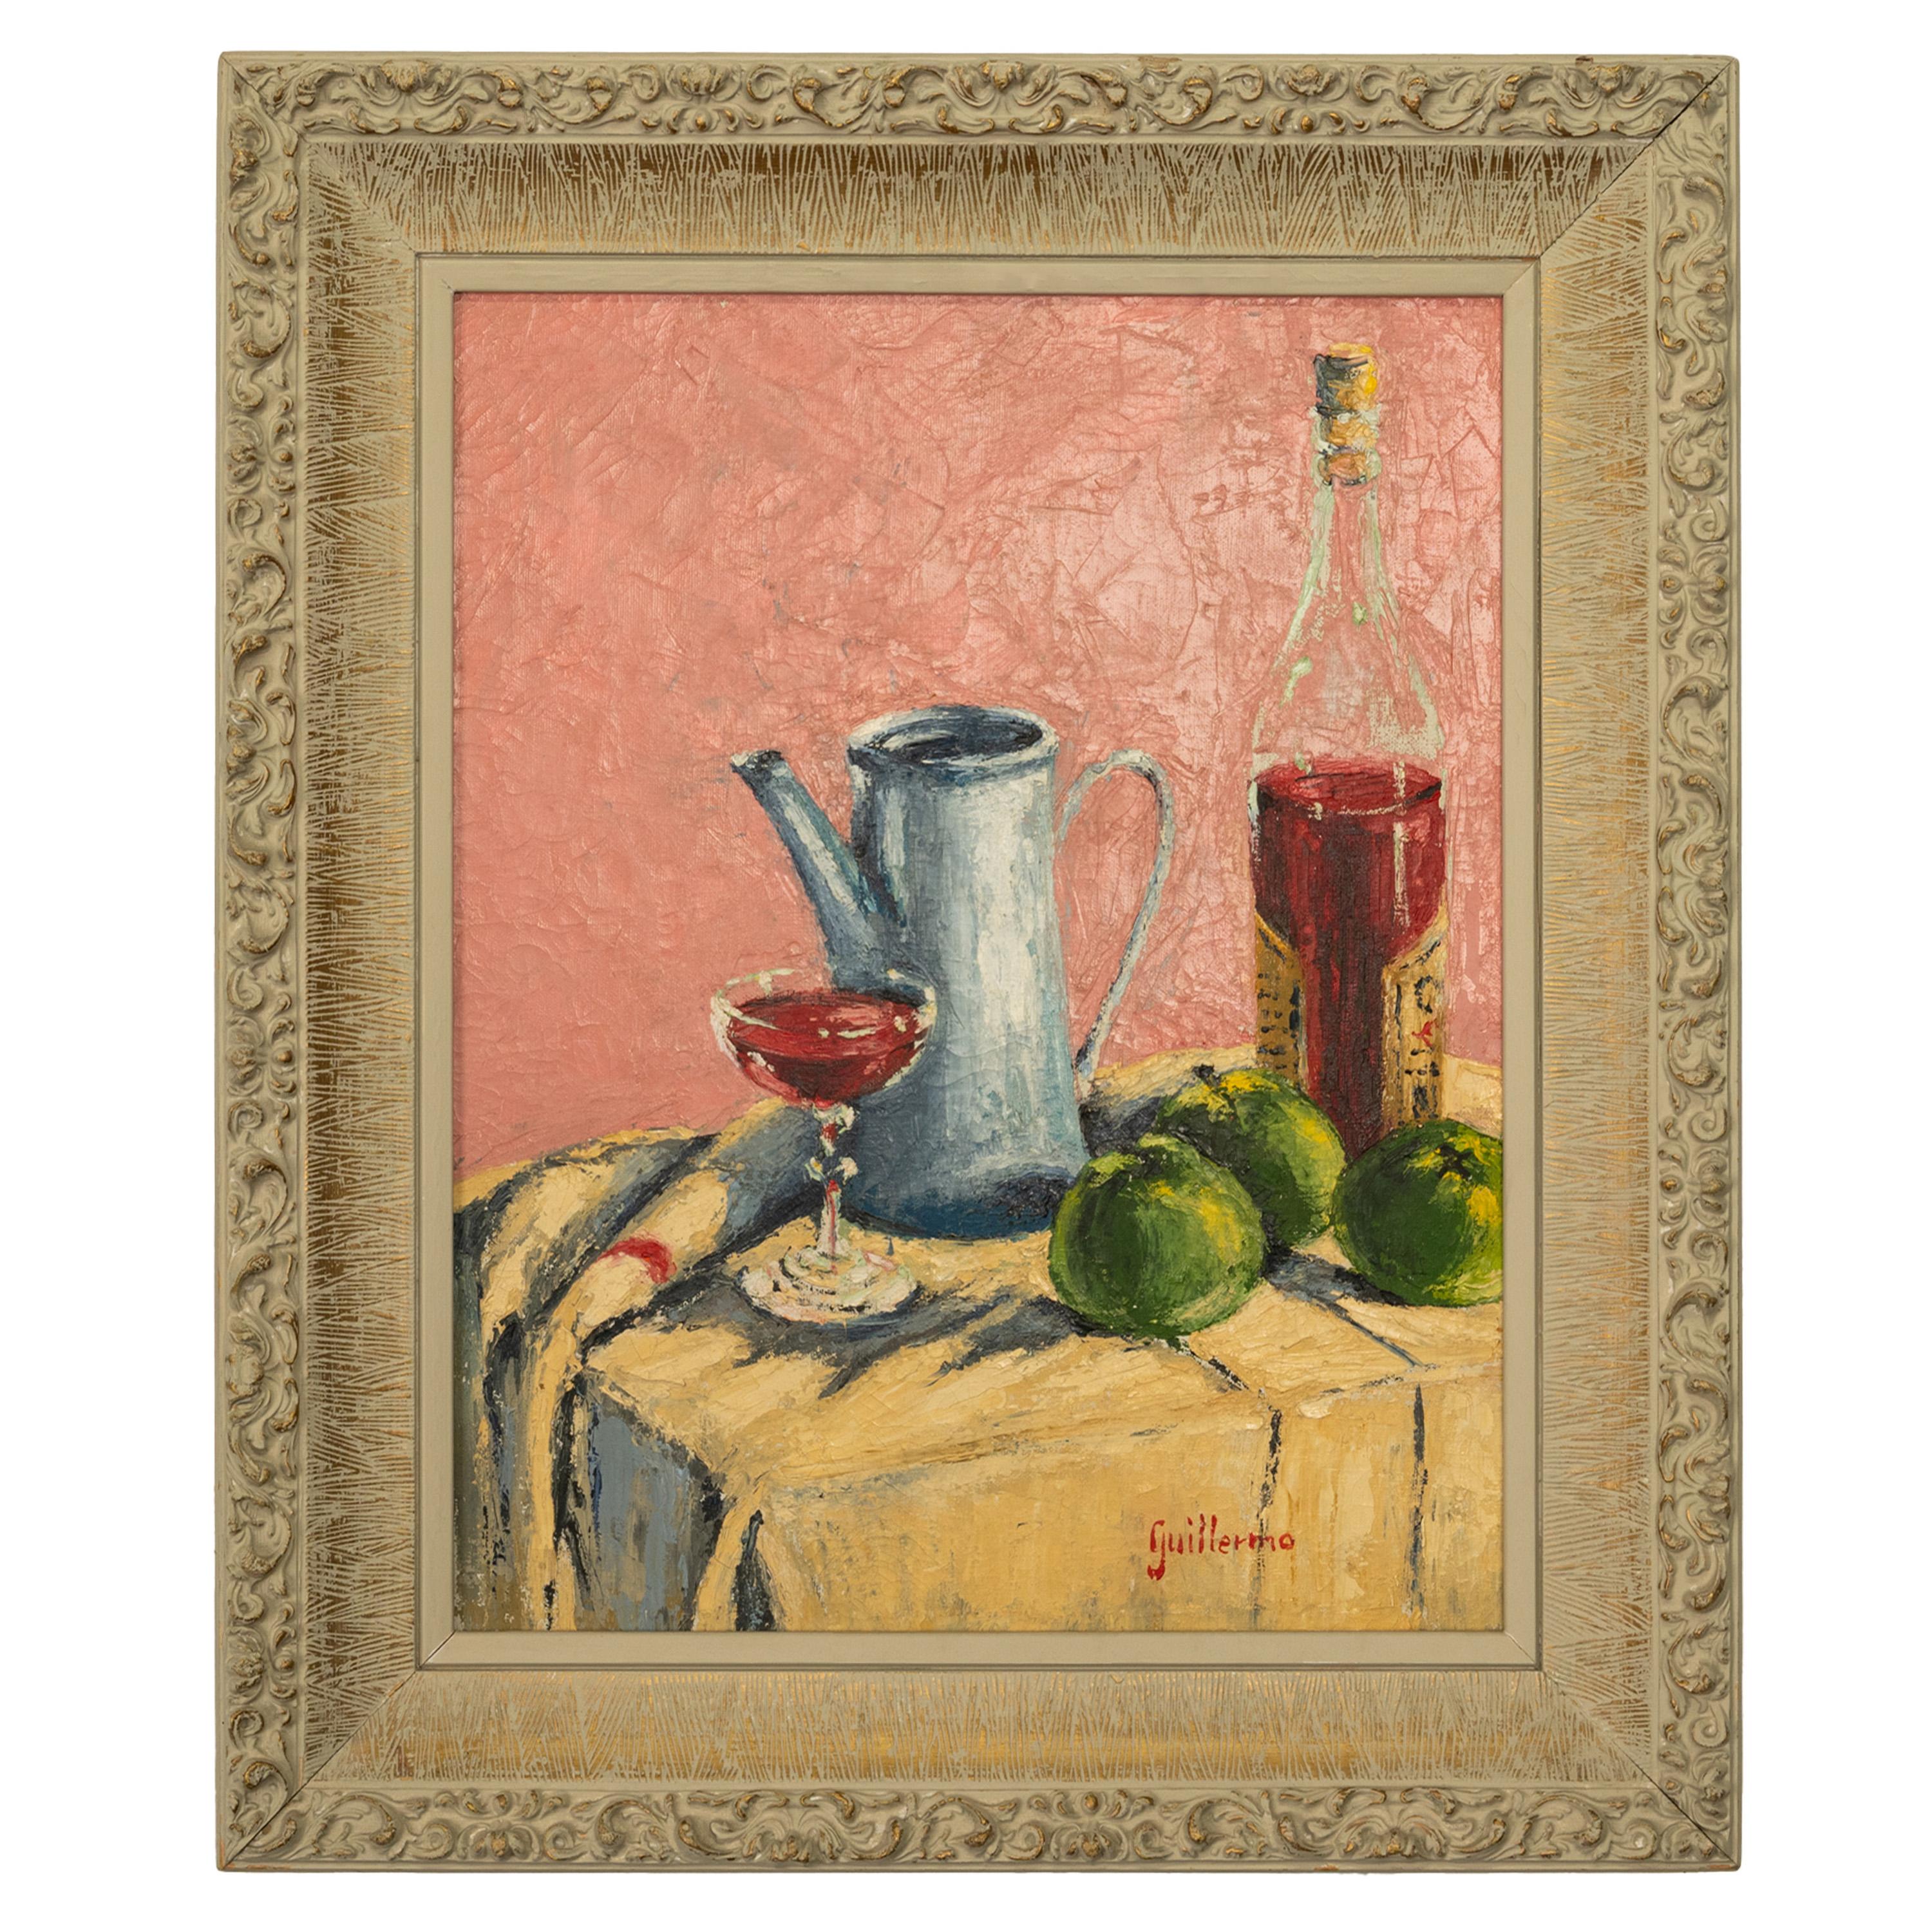 Juan Guillermo Still-Life Painting –  Modernistisches spanisches abstrakt-impressionistisches Ölgemälde auf Leinwand, Stillleben 1950 